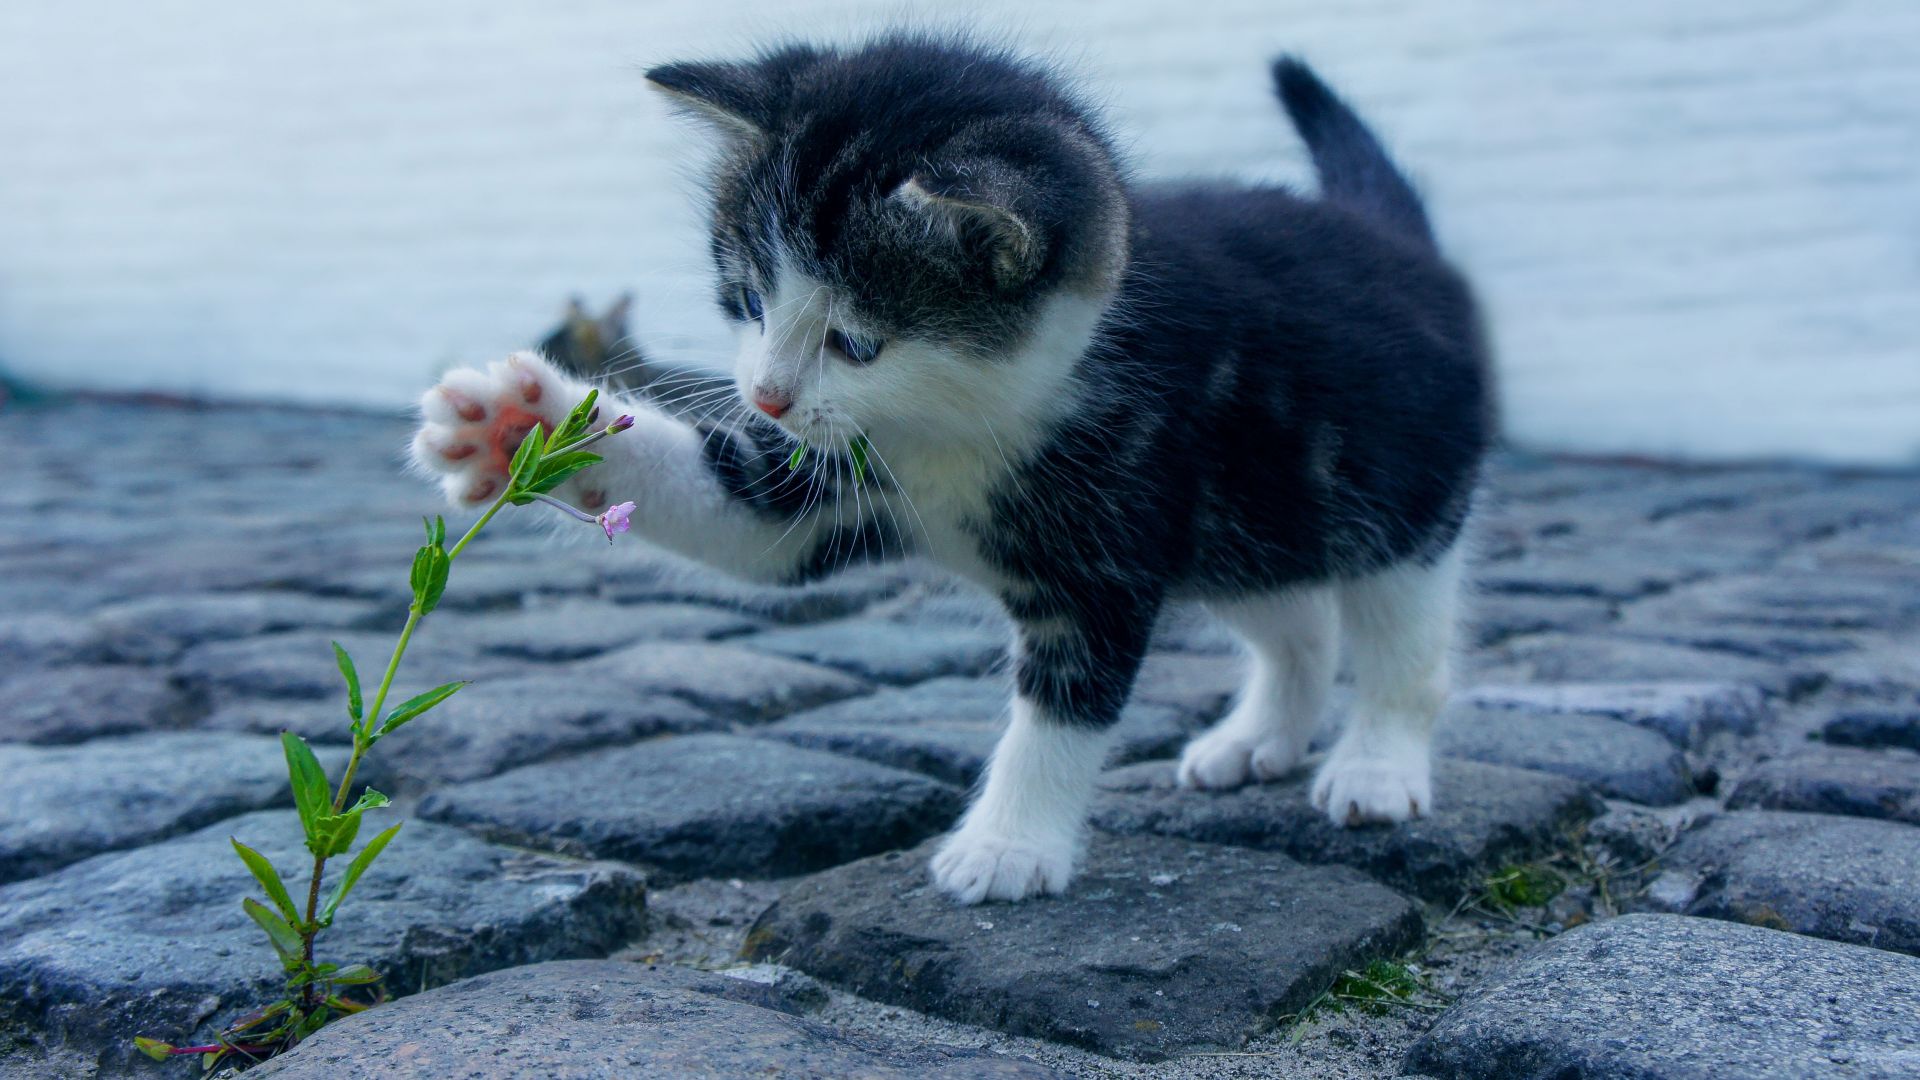 Kitten, funny animals, flower, 4K (horizontal)